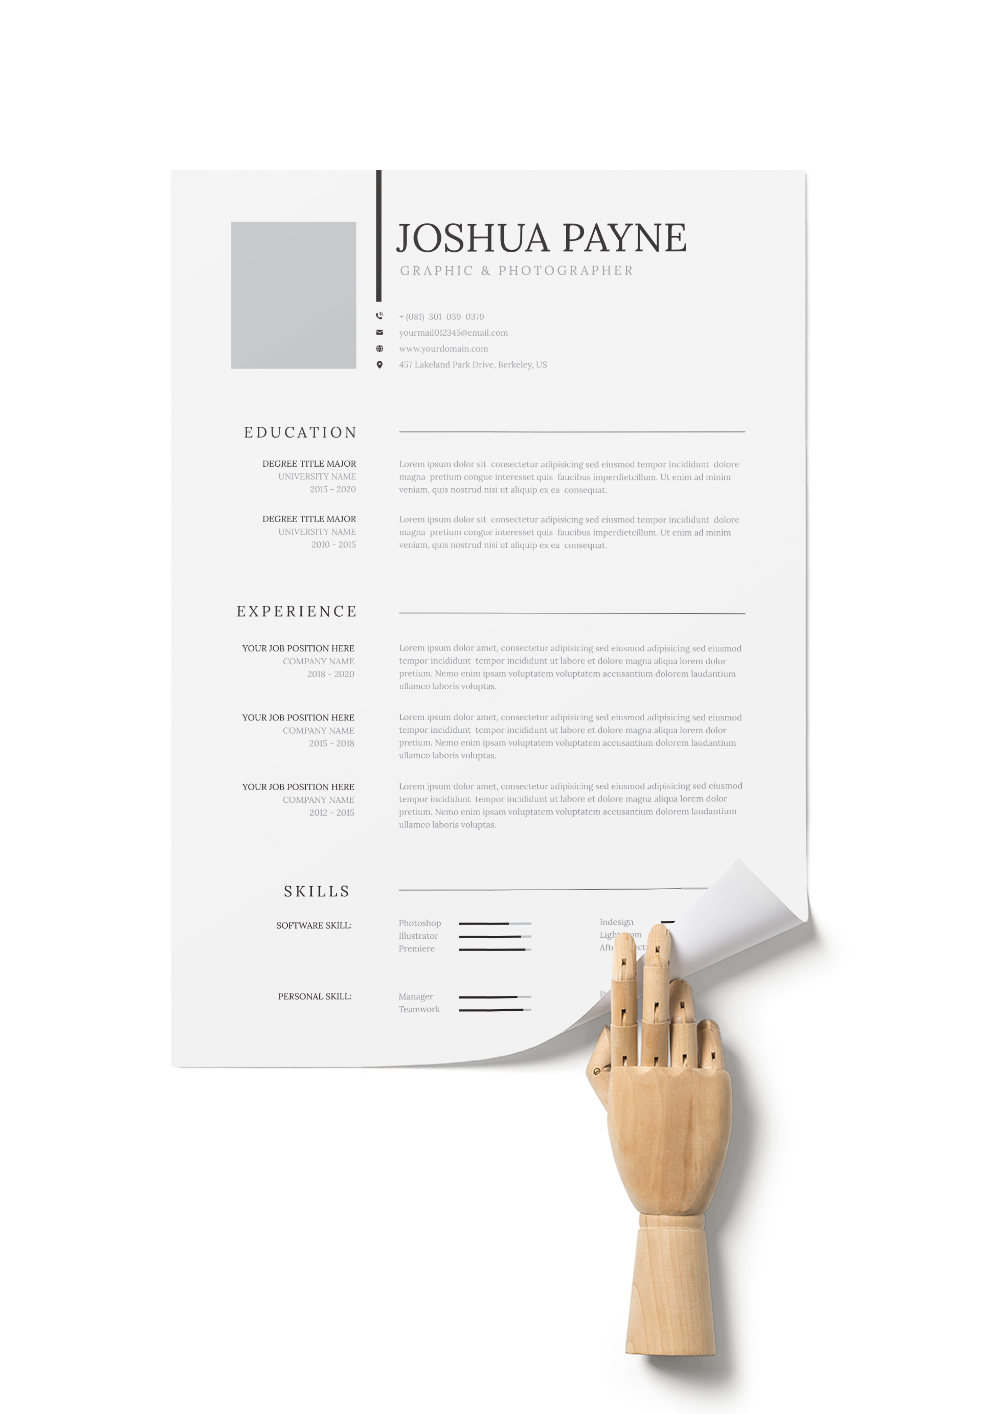 CV #60 Joshua Payne